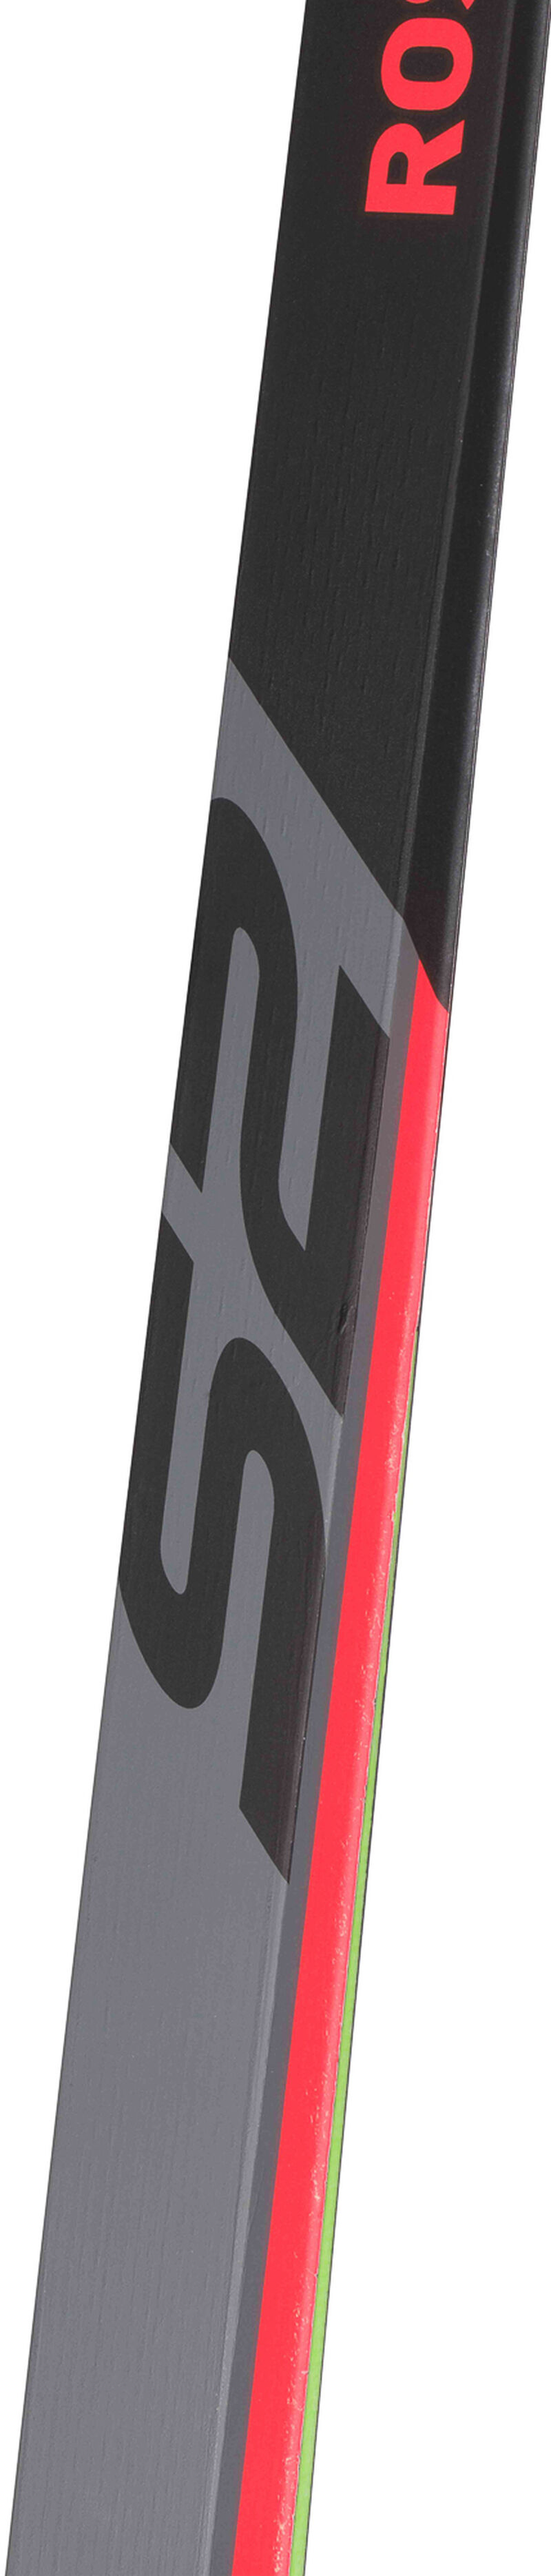 Unisex Nordic Racing Skis X-IUM SKATING PREMIUM+S2 SOFT